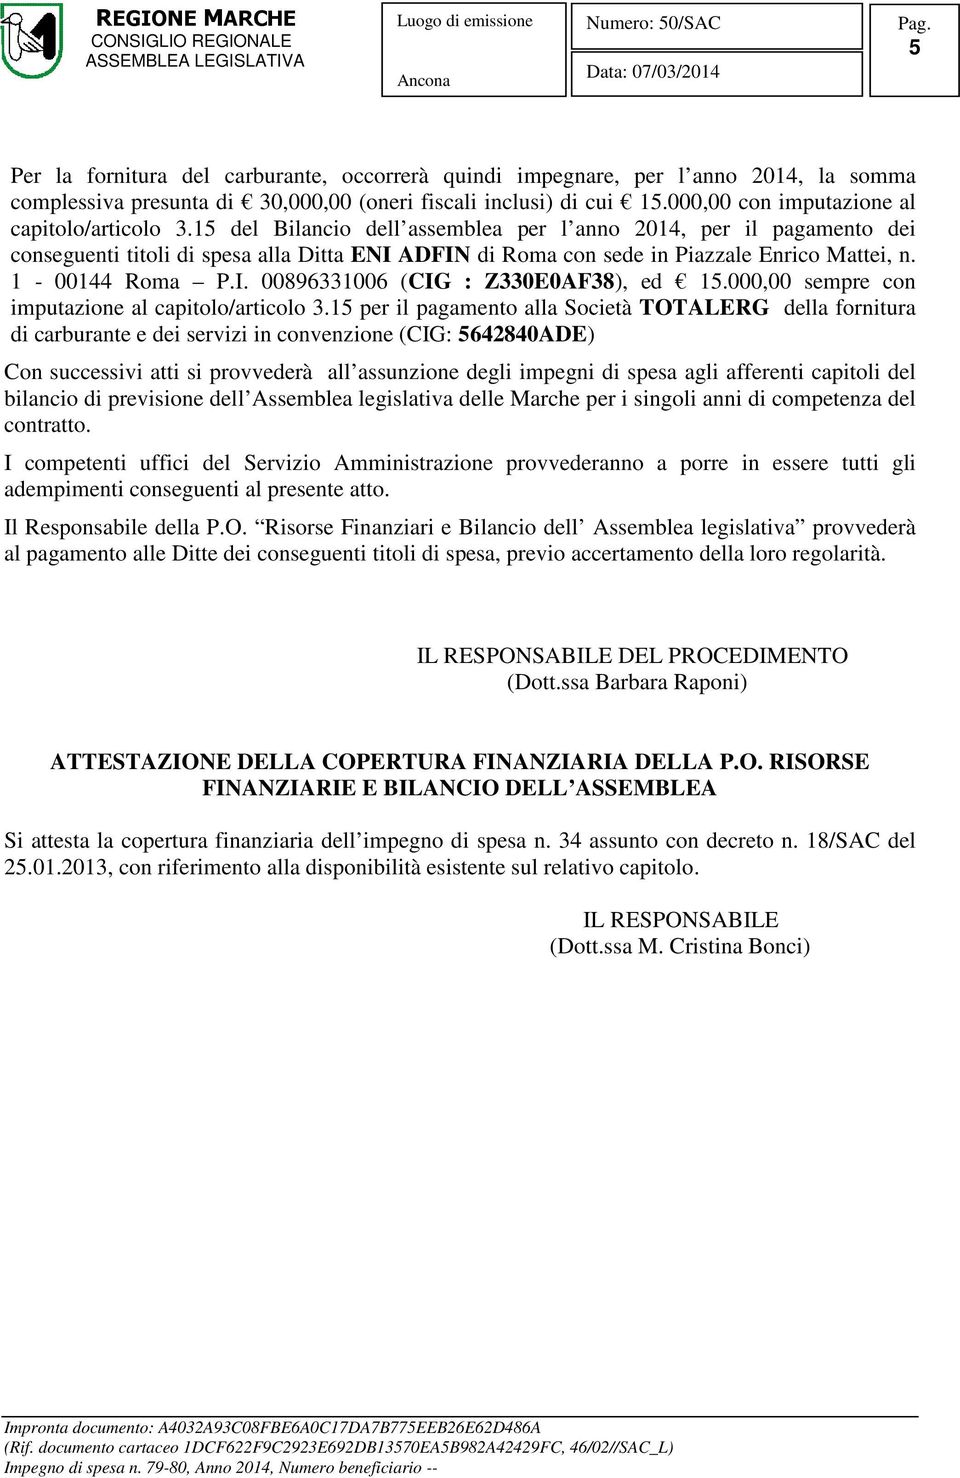 15 del Bilancio dell assemblea per l anno 2014, per il pagamento dei conseguenti titoli di spesa alla Ditta ENI ADFIN di Roma con sede in Piazzale Enrico Mattei, n. 1-00144 Roma P.I. 00896331006 (CIG : Z330E0AF38), ed 15.